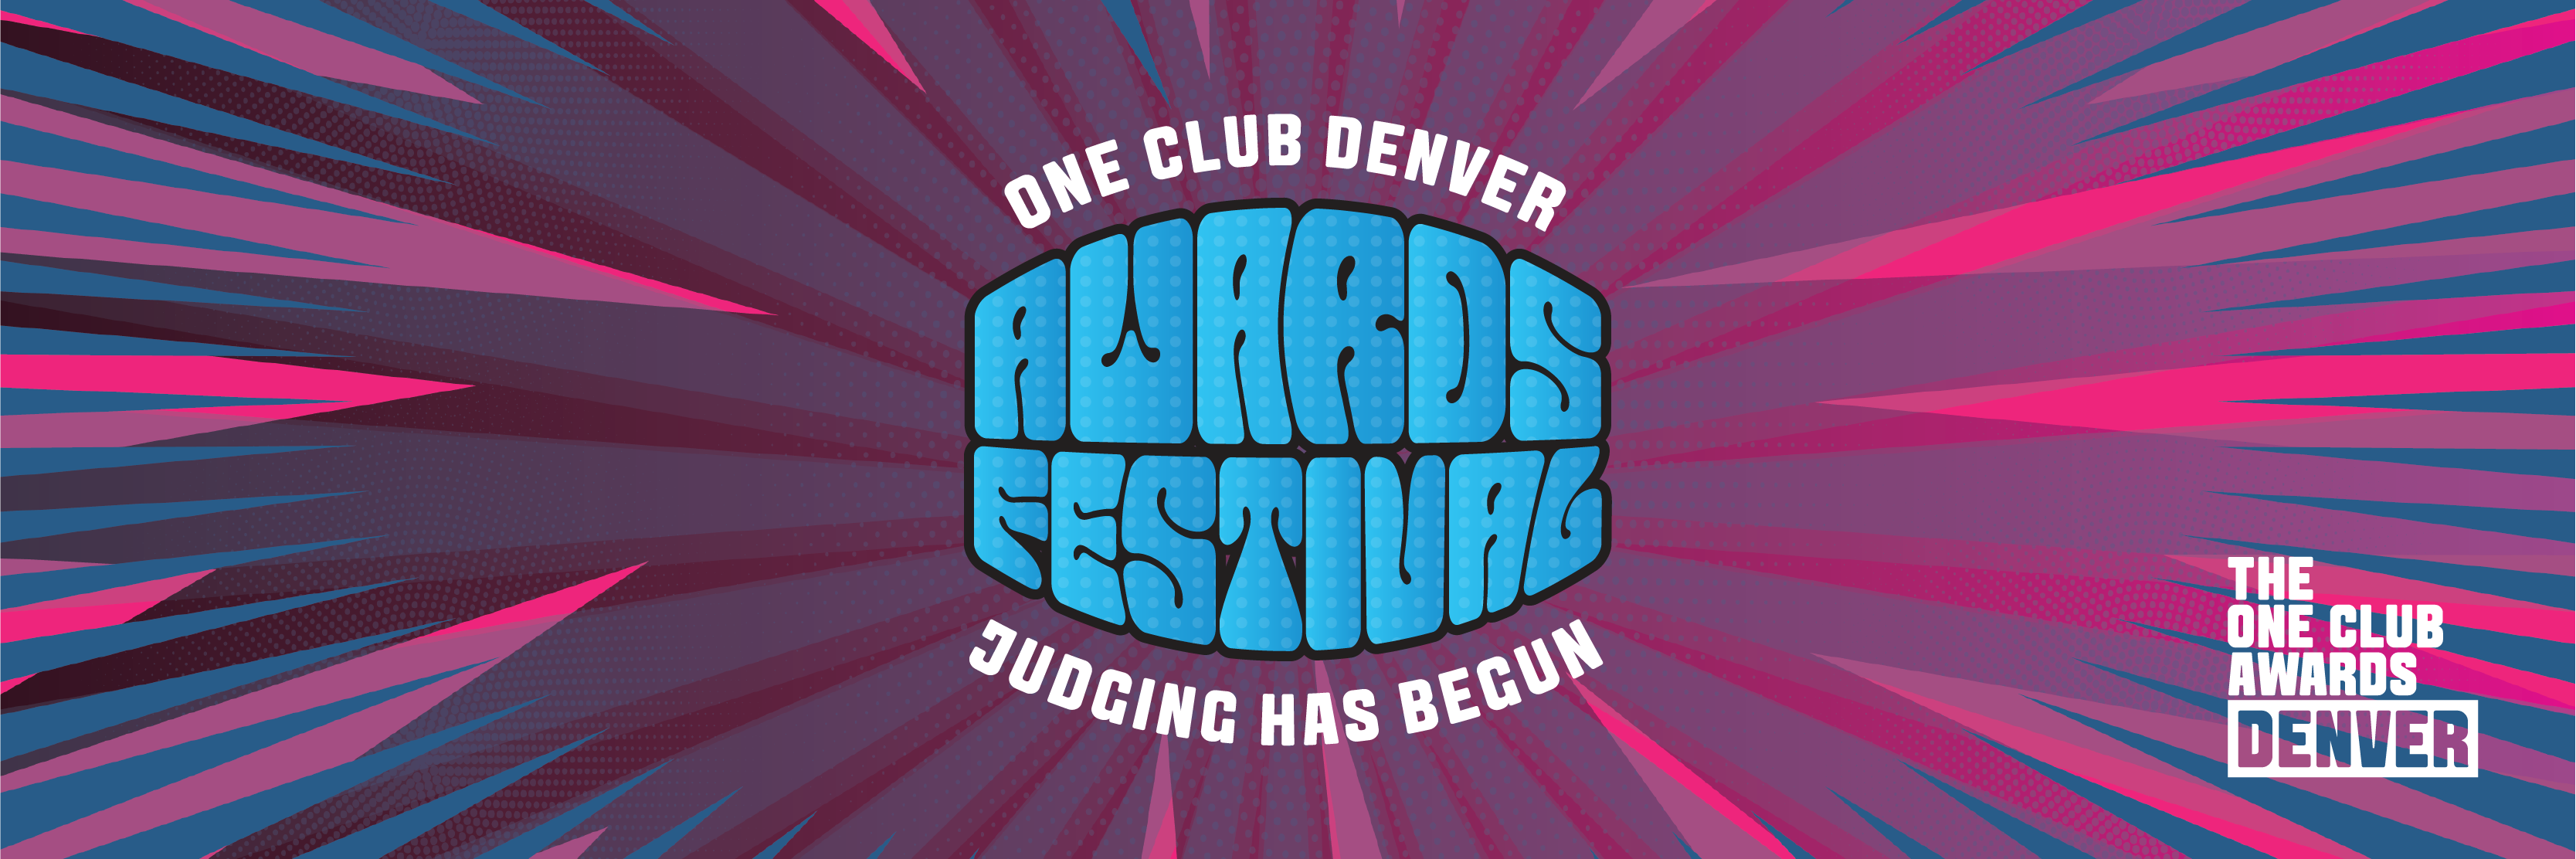 2022 One Club Awards Denver Call For Entries